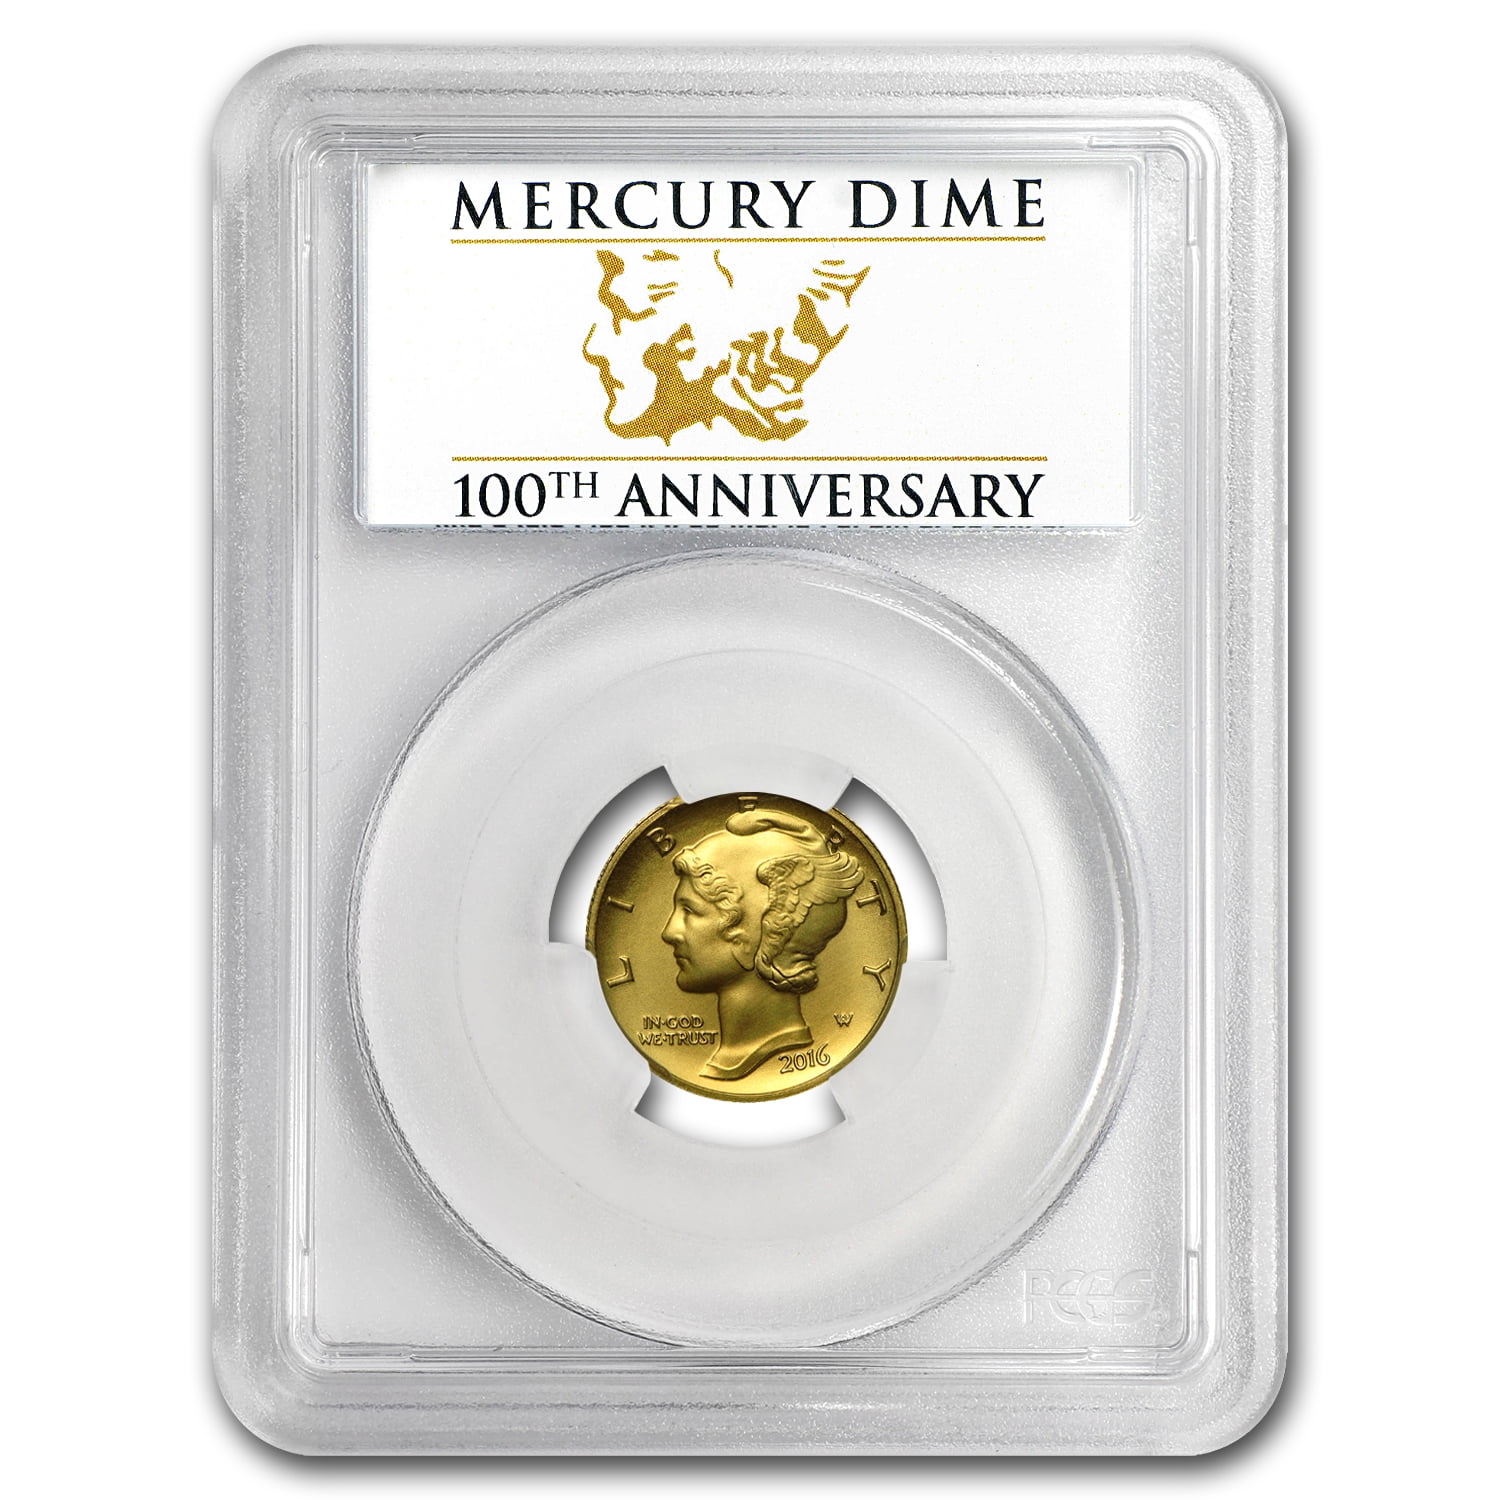 2016-W 1/10 oz Gold Mercury Dime SP-70 PCGS (FS, Cent'l Label